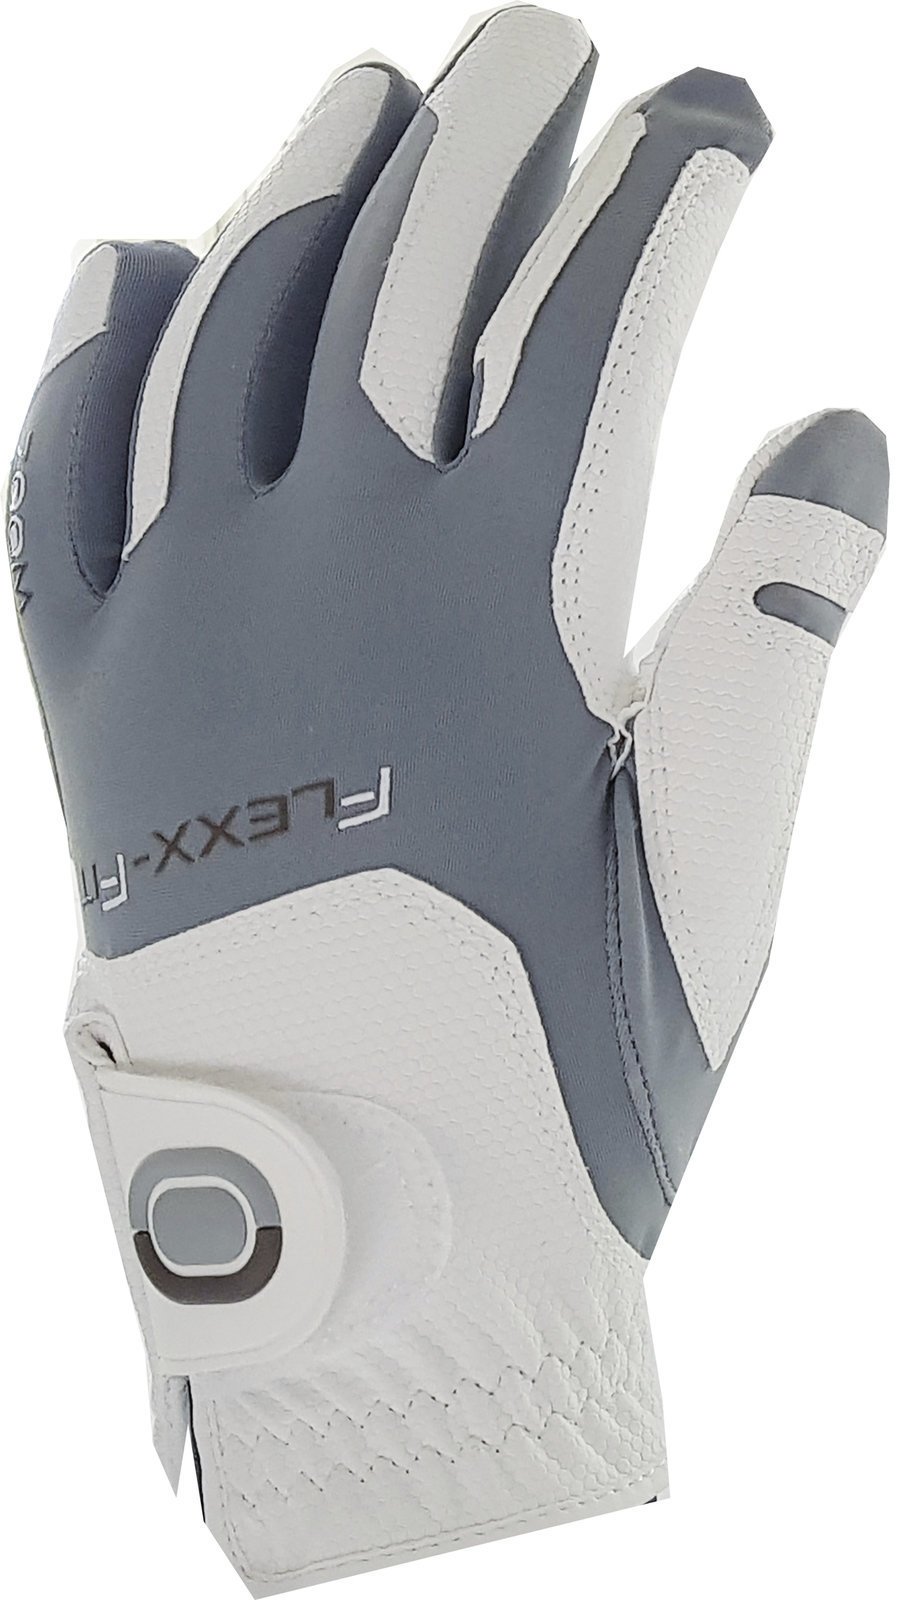 Gloves Zoom Gloves Weather Womens Golf Glove White/Silver LH